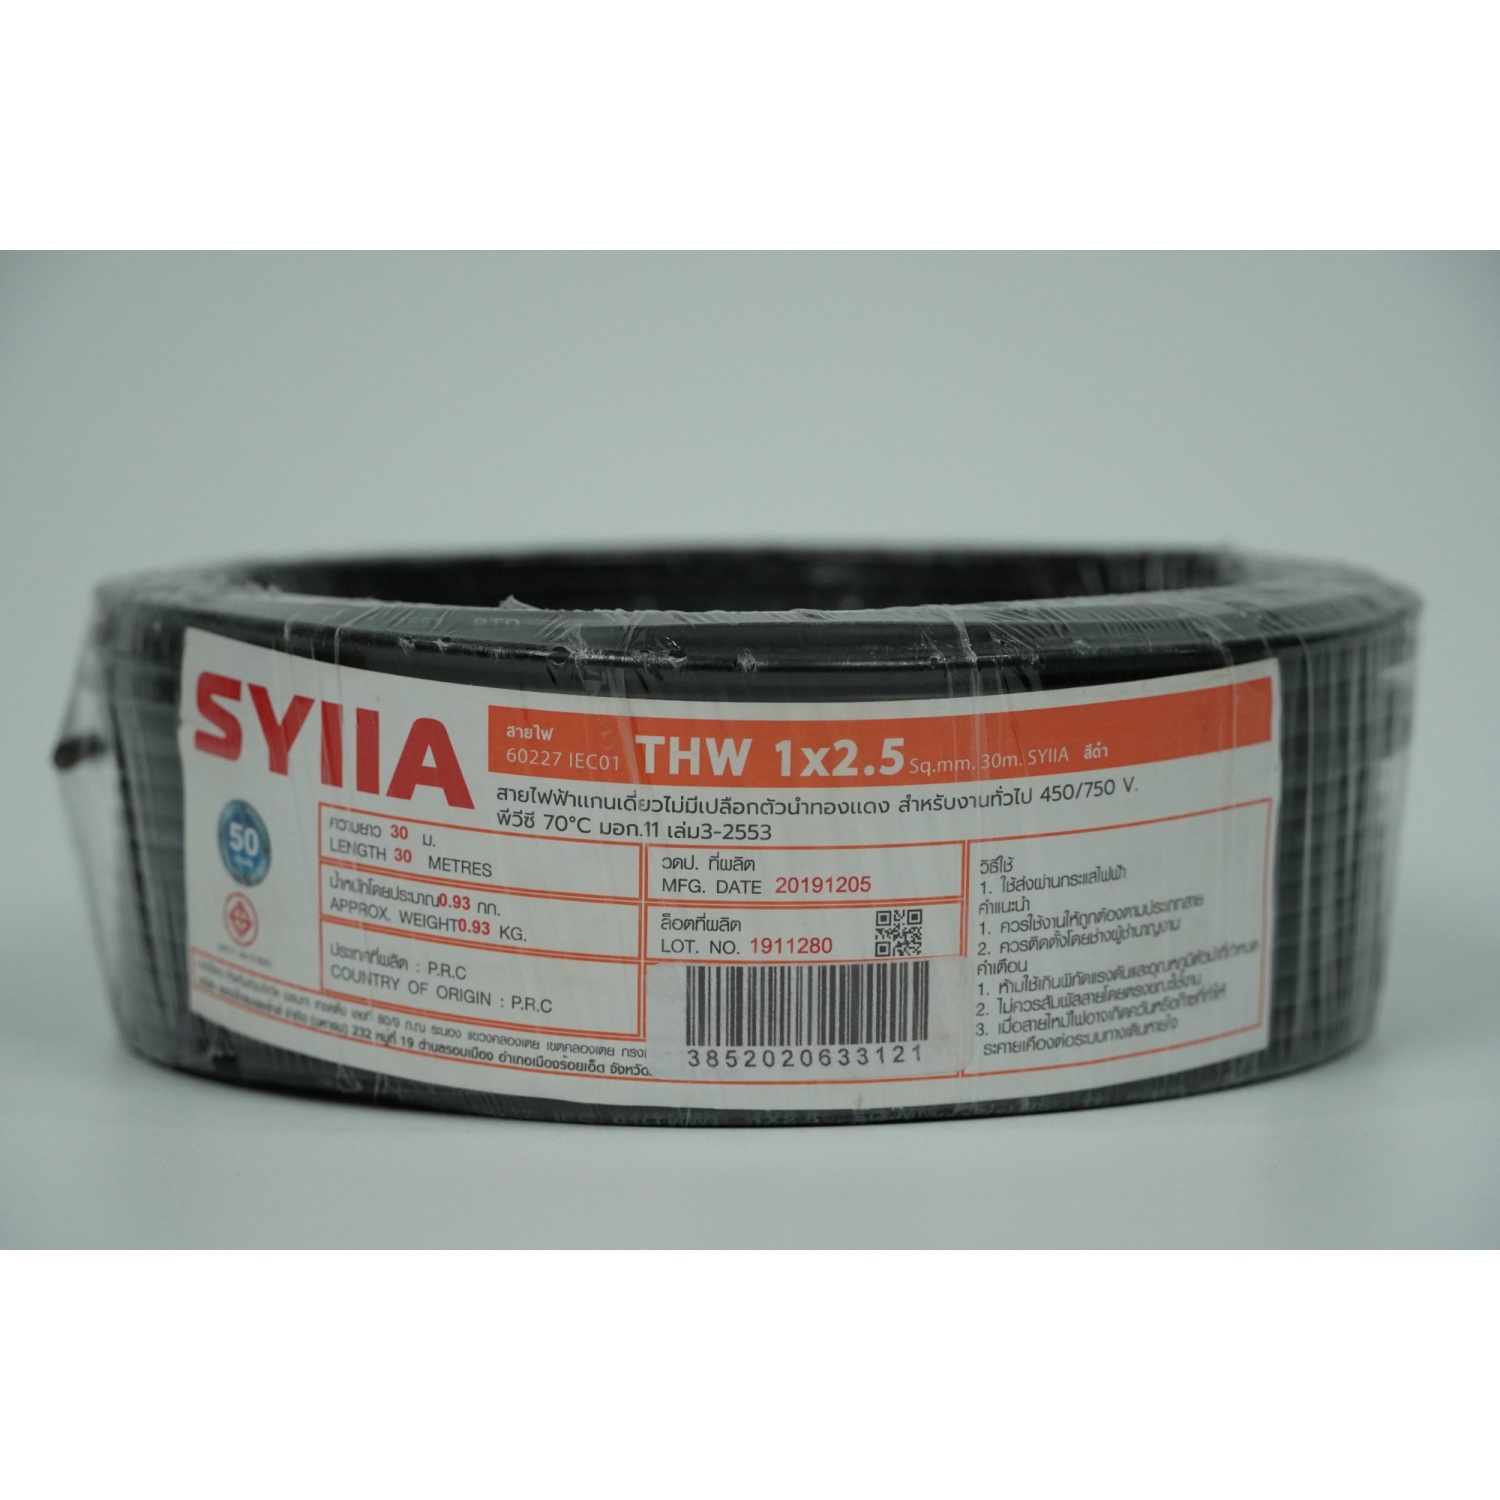 SYIIA  สายไฟ IEC01 THW 1x2.5 Sq.mm. 30m. สีดำ